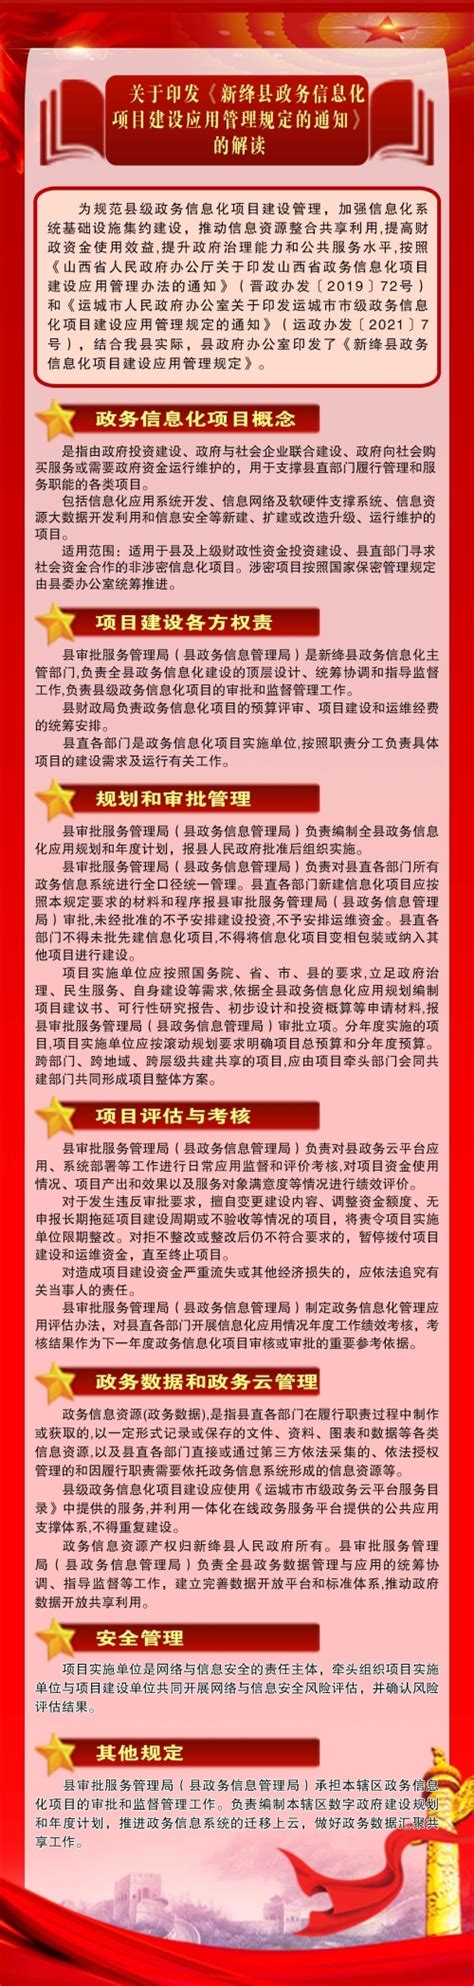 山西发布11条调整优化疫情防控政策_新绛_来源_信息